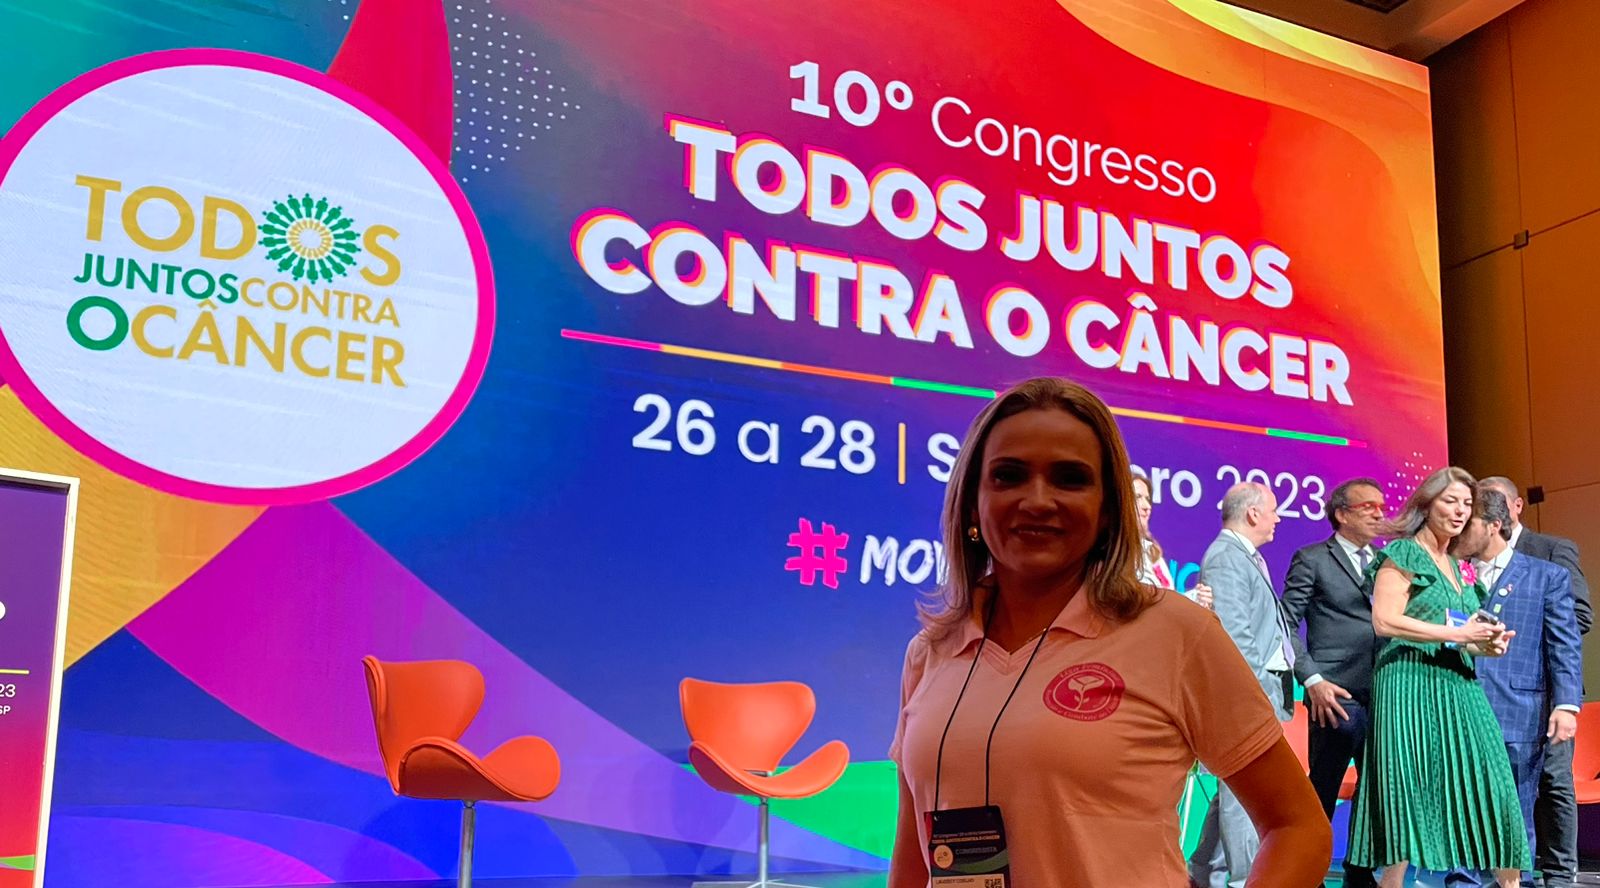 Vereadora Laudecy Coimbra participa do 10º congresso todos juntos contra o câncer em são paulo